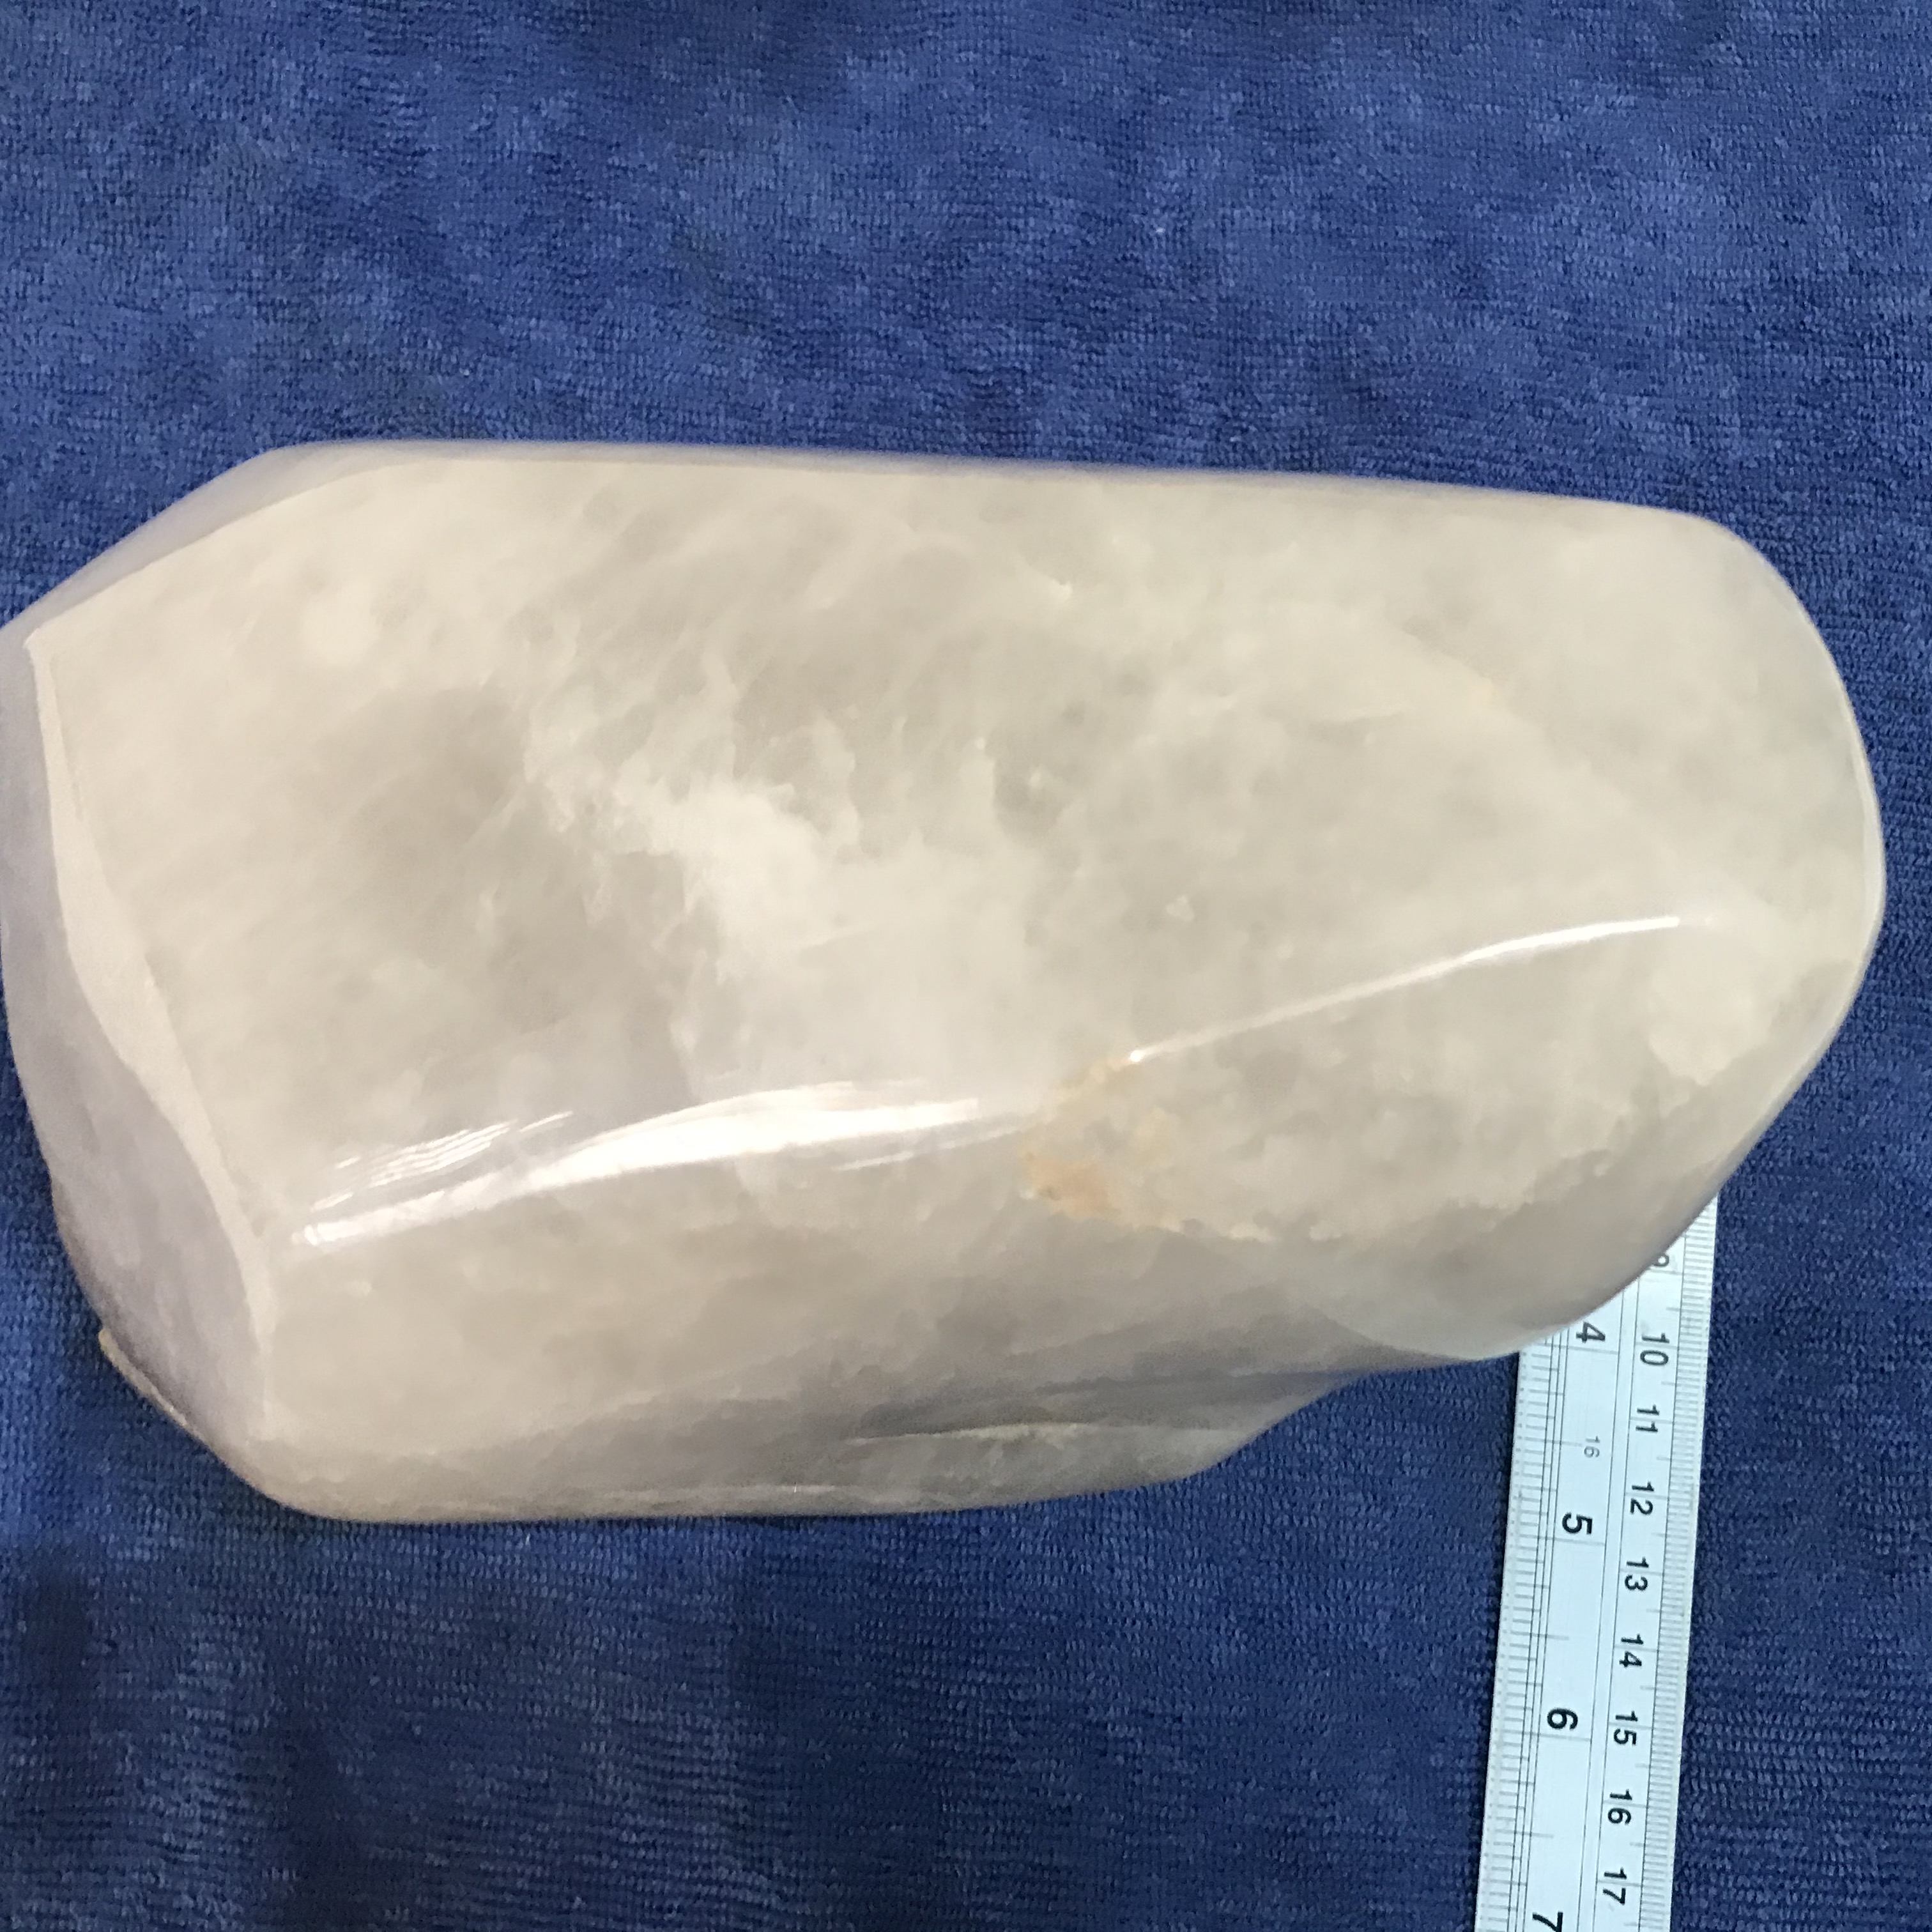 Cây đá thạch anh trắng nặng 2.8 kg trong suốt cho người mệnh Thủy và Kim